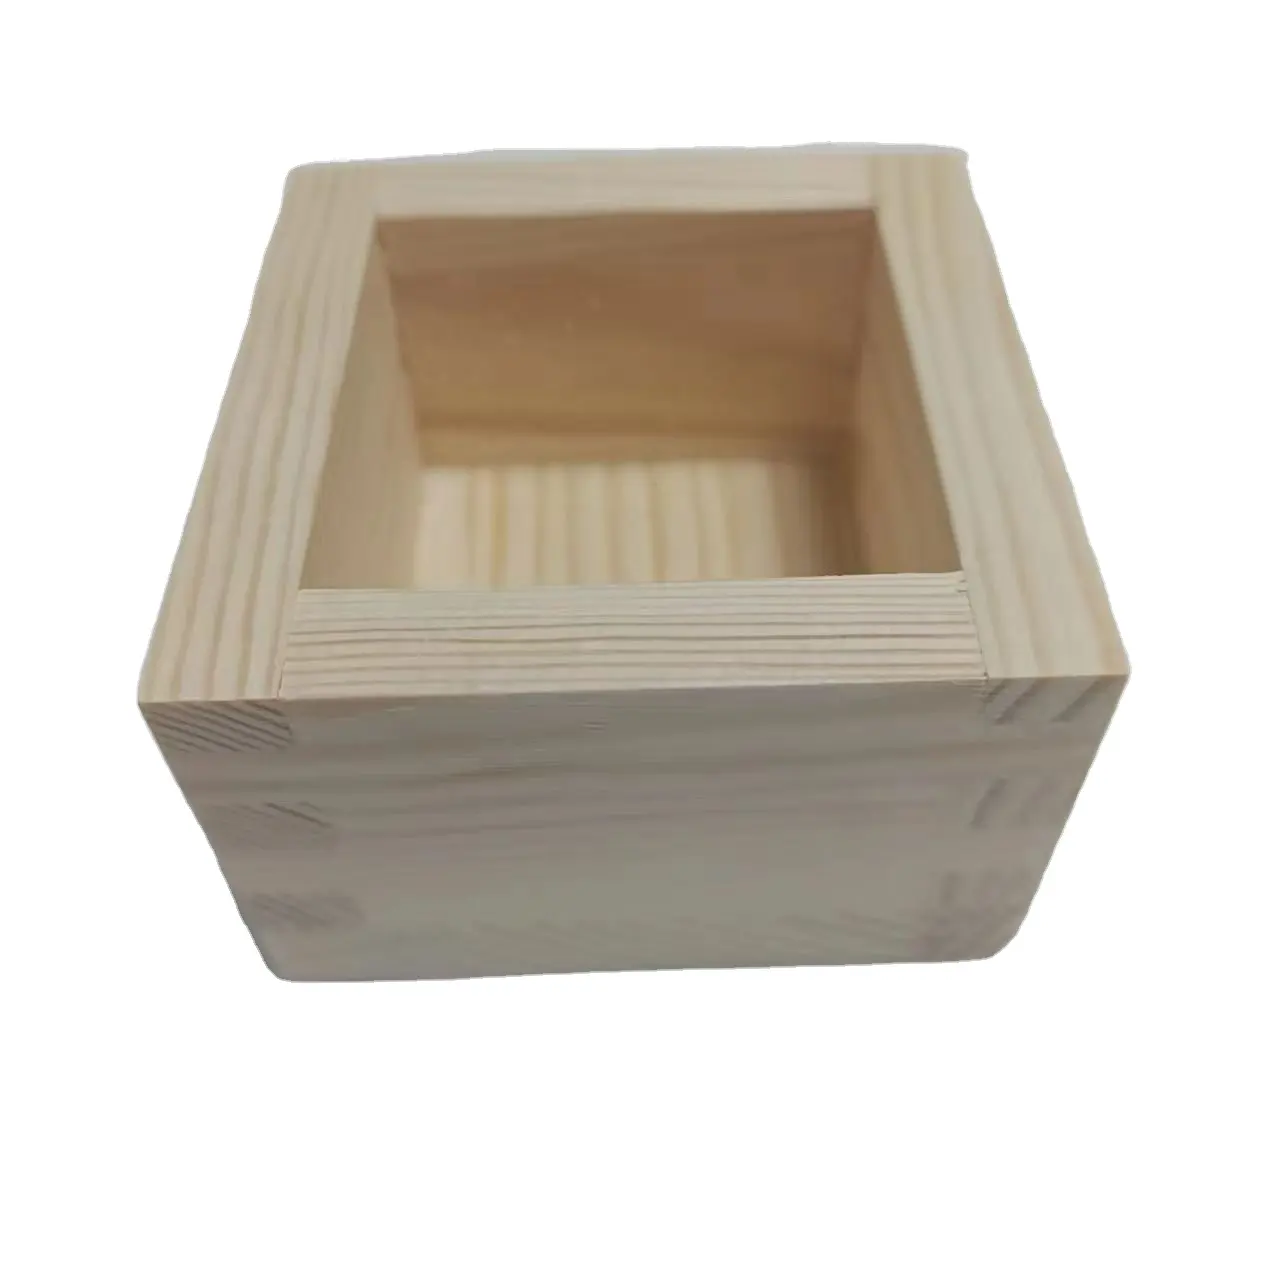 Masu ถ้วยใส่สาเกไม้สนกล่องแบบญี่ปุ่นกล่องถาดใส่สาเกมาซูไม้ขนาดเล็ก